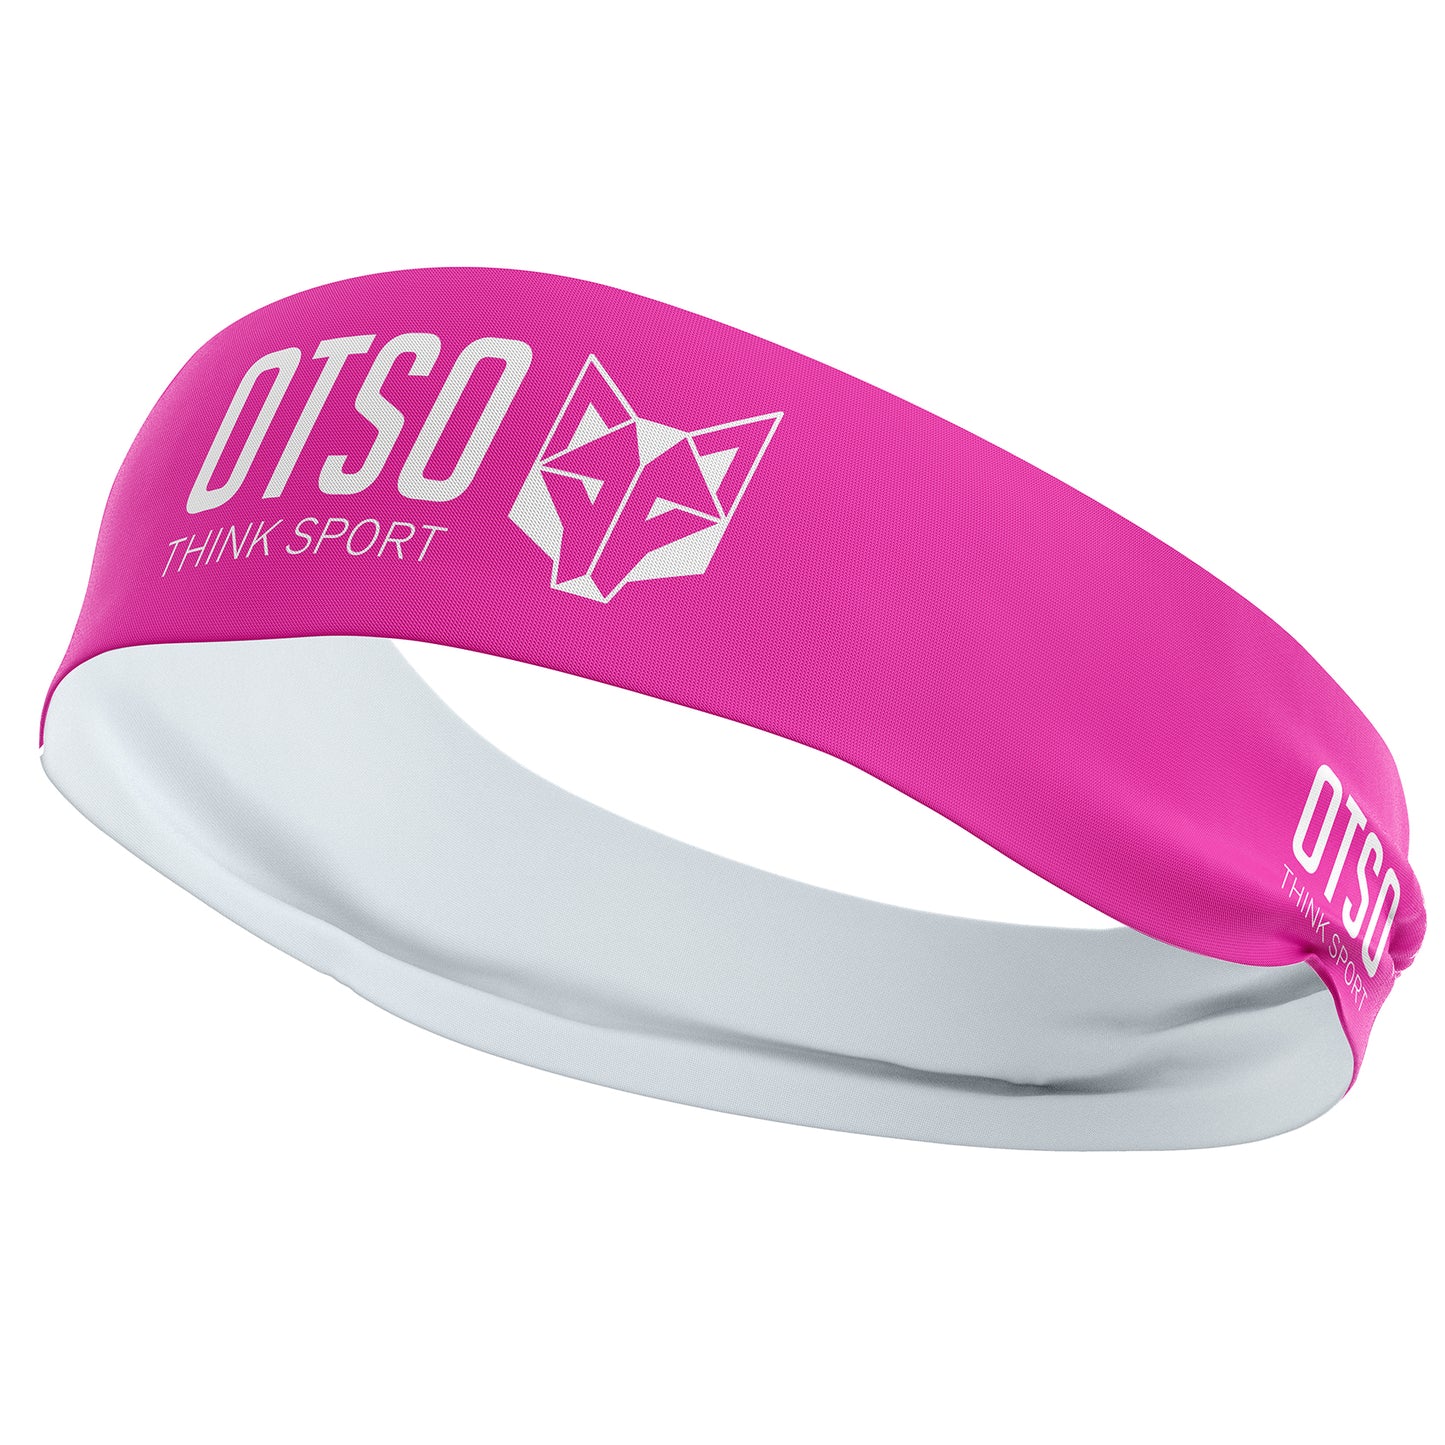 Cinta de Cabeza OTSO Sport Fluo Pink / White